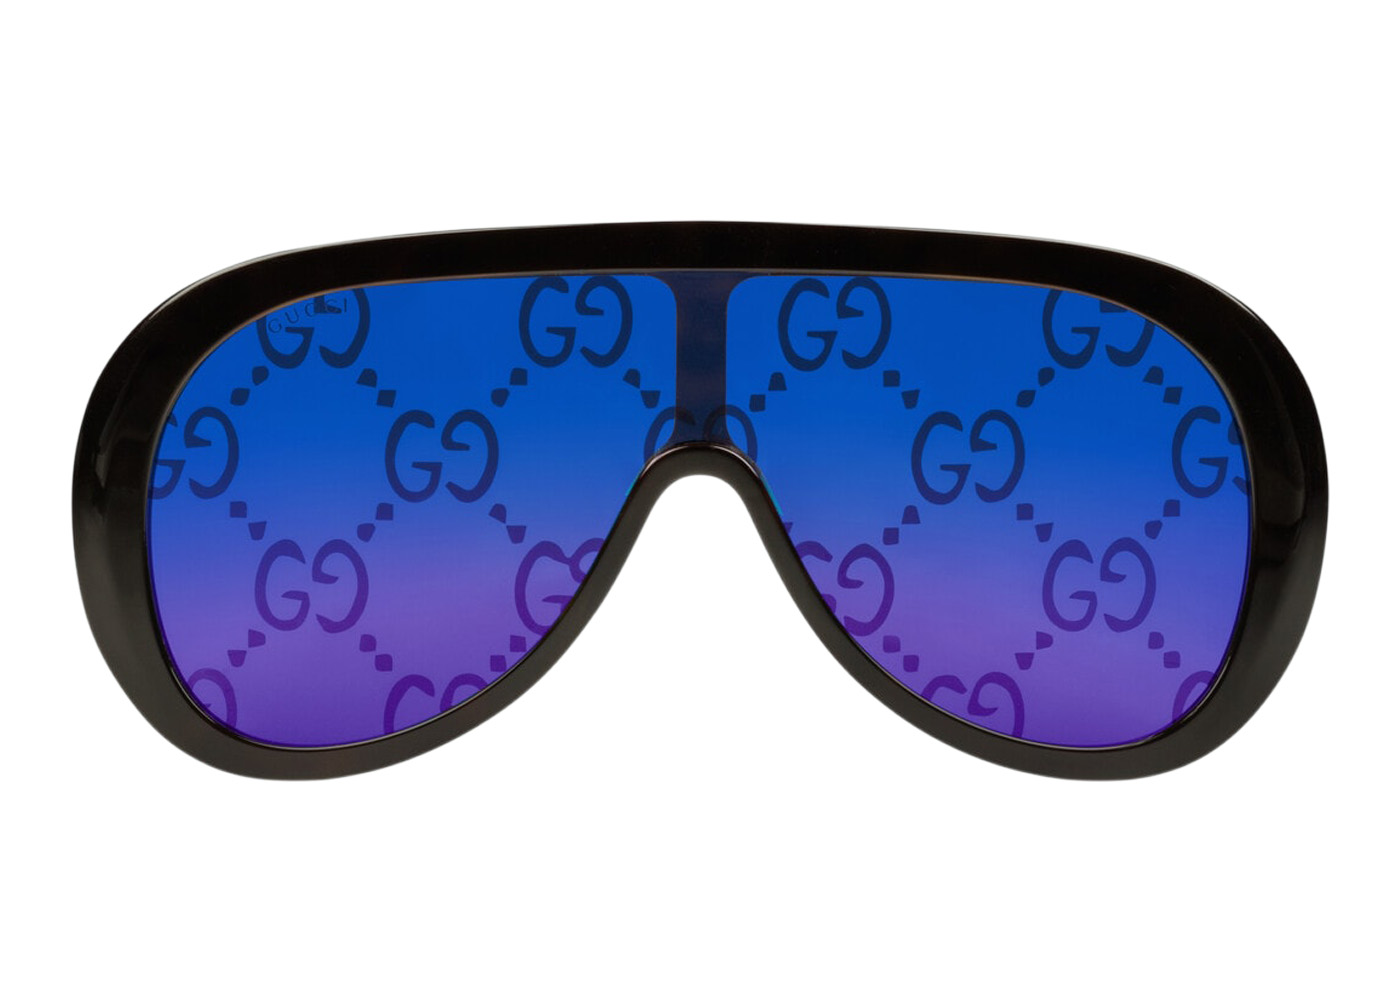 Gucci Eyewear Oversized Square Sunglasses - Farfetch